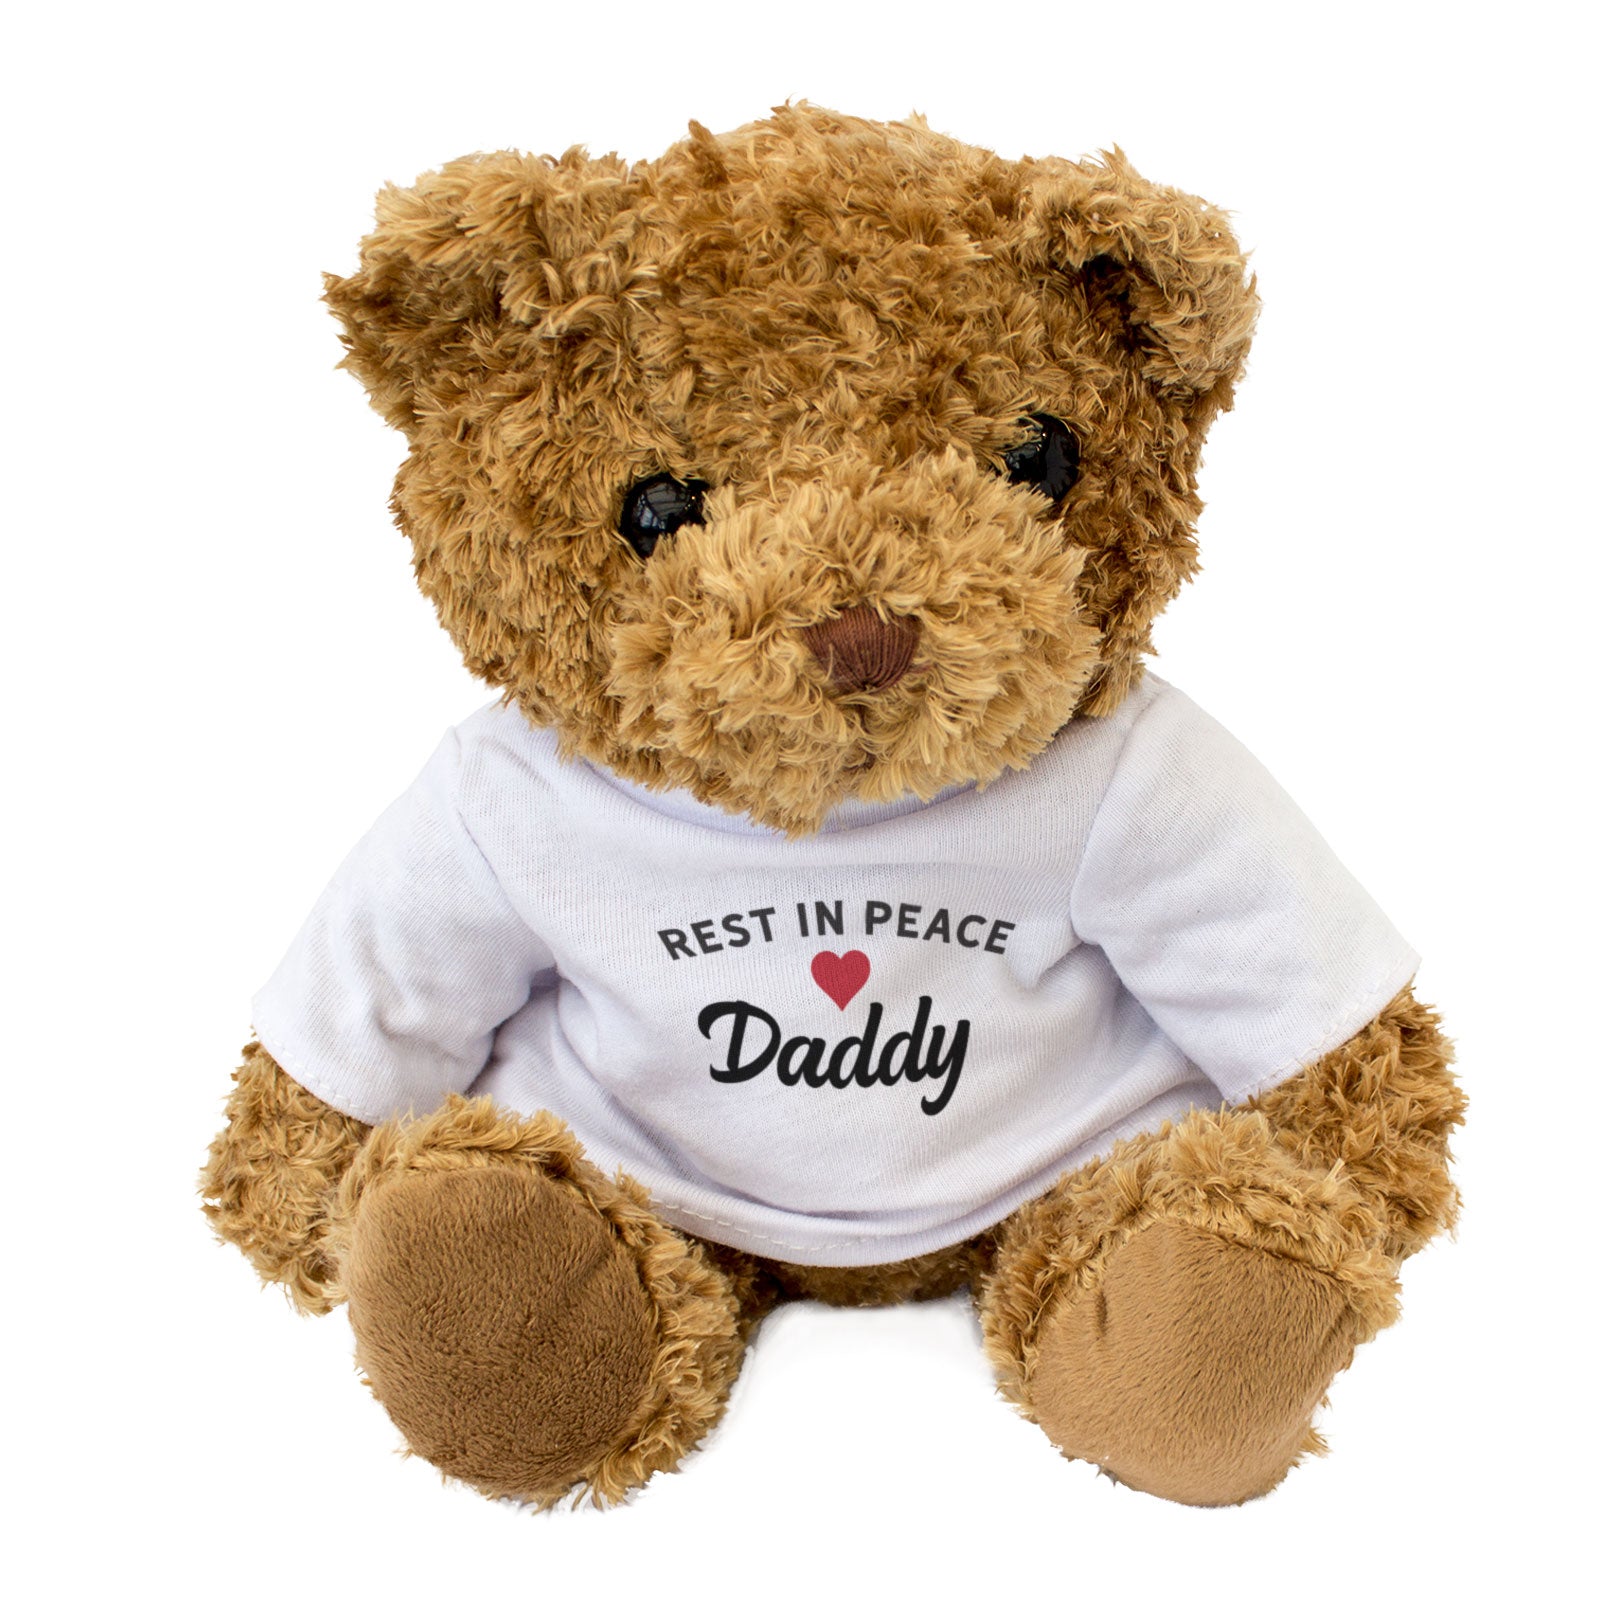 RIP Daddy - Teddy Bear - Rest In Peace